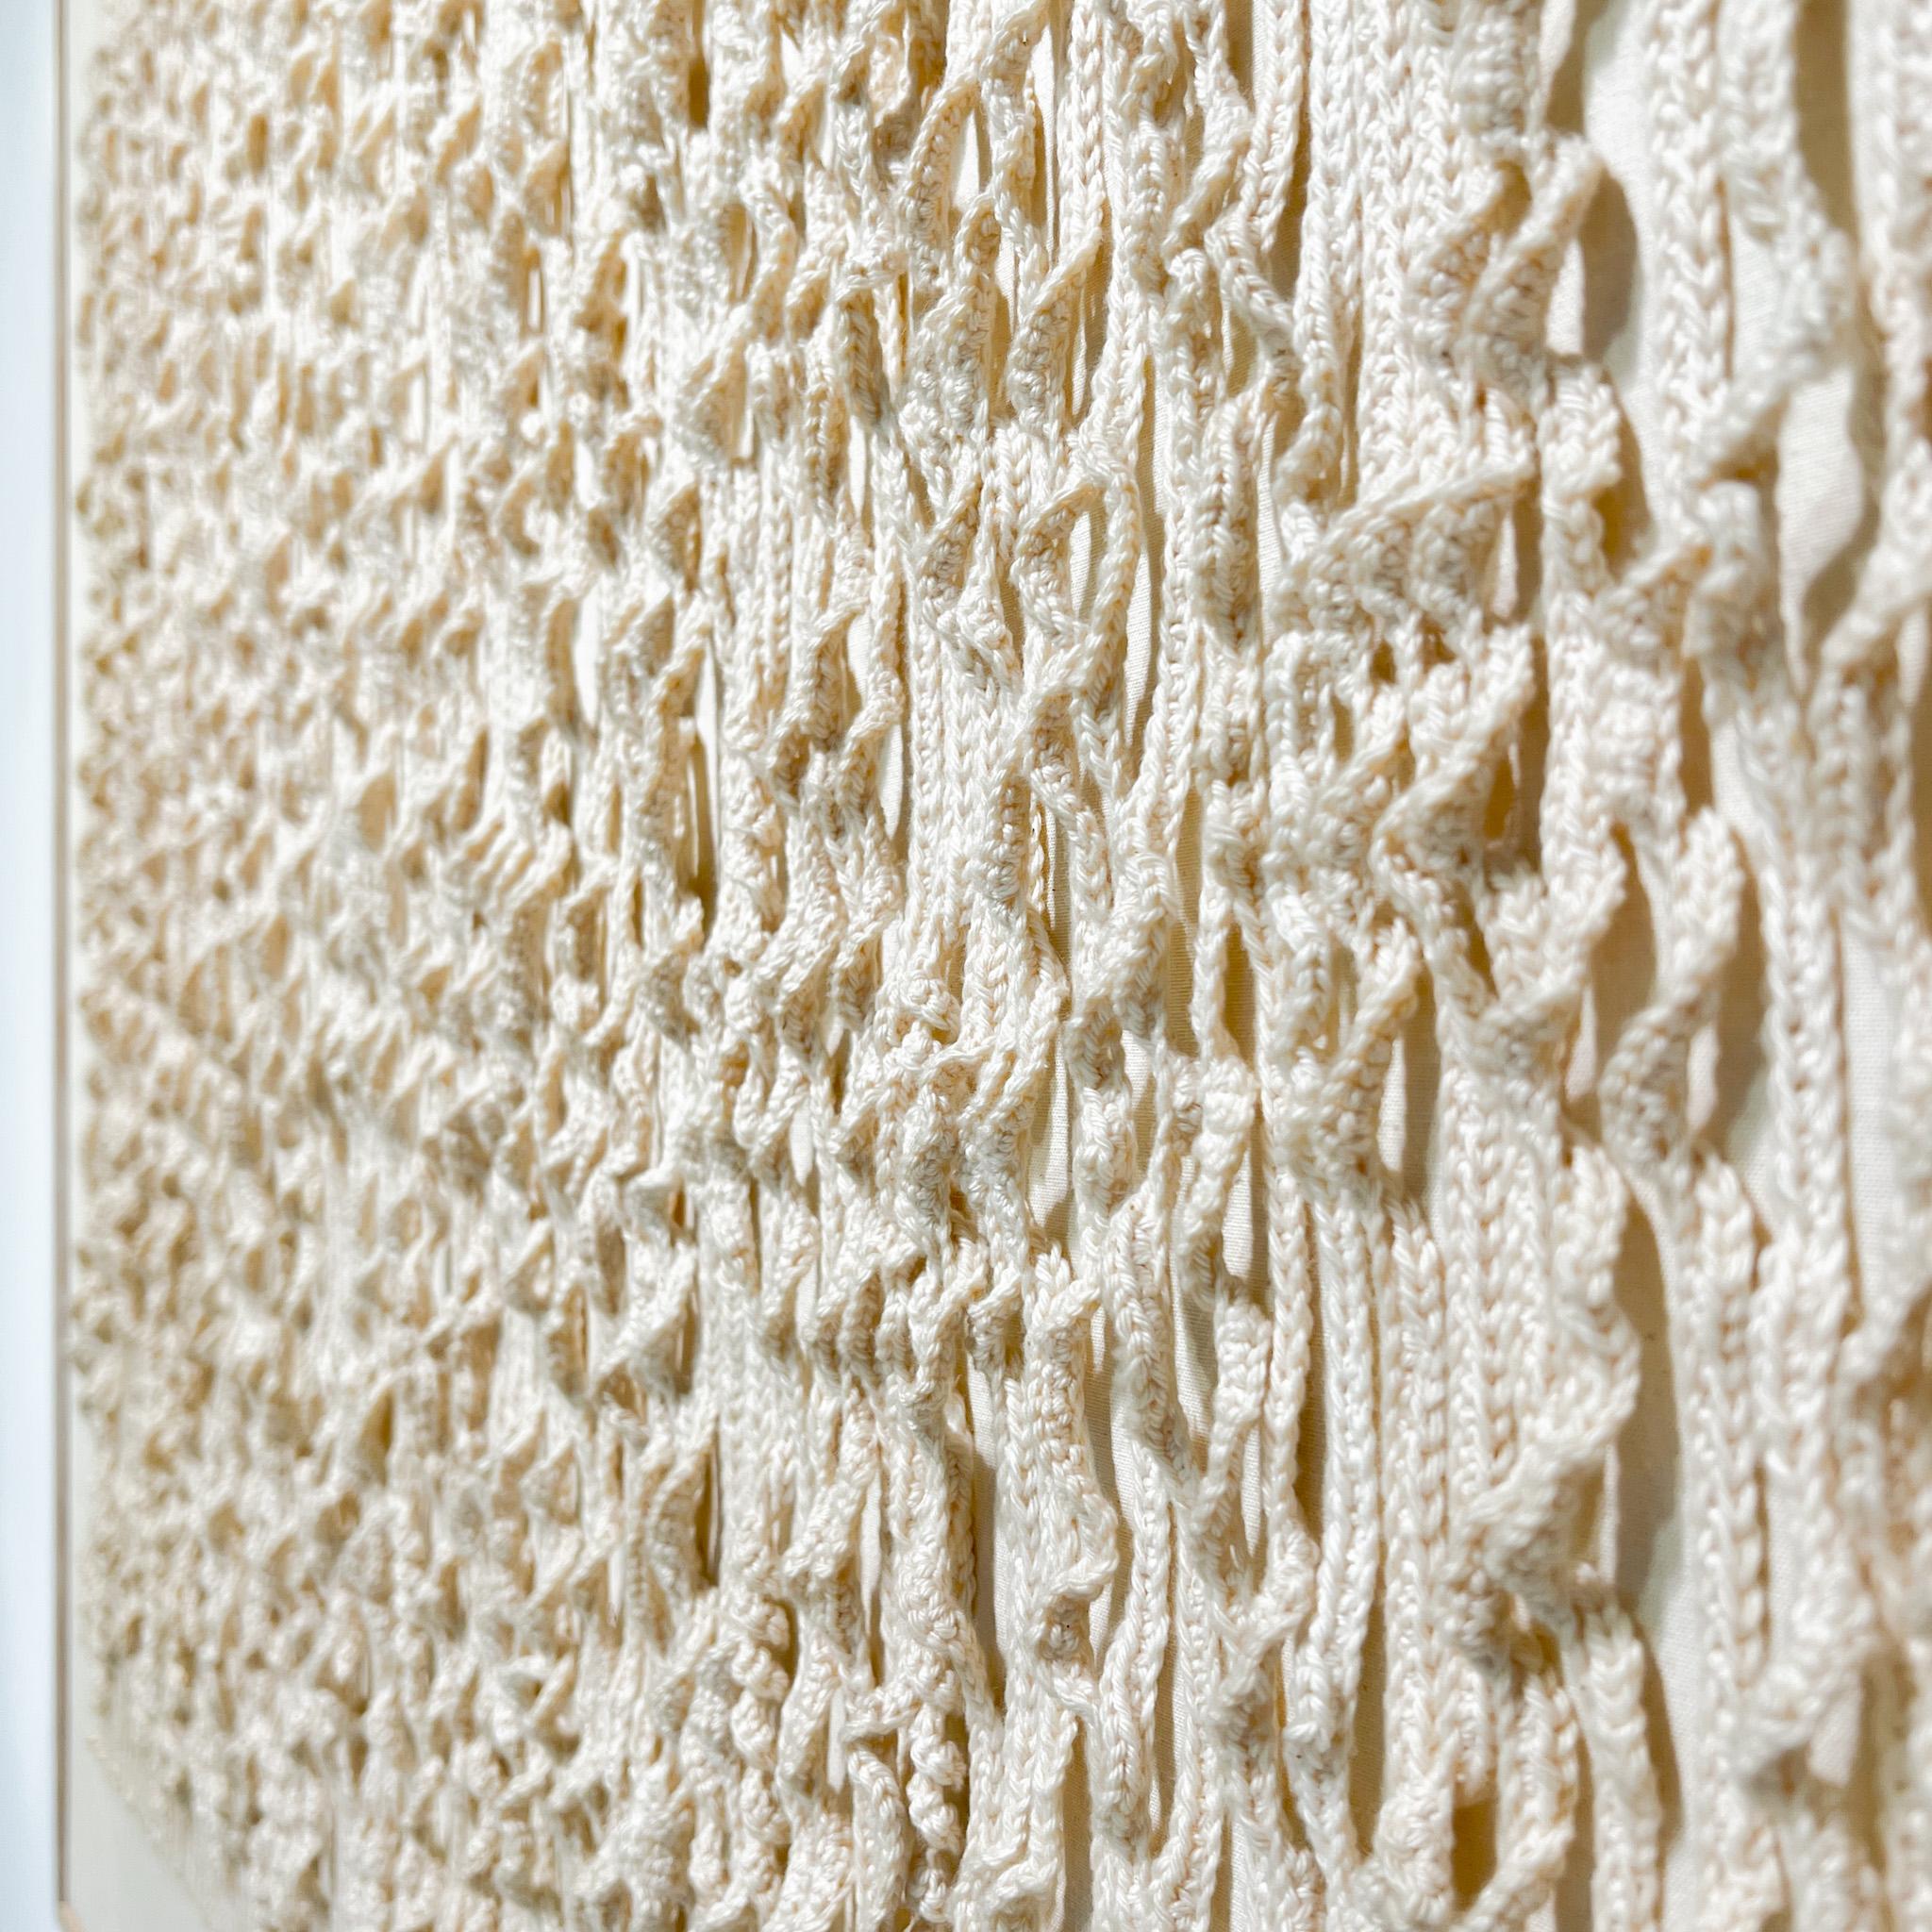 Niederländisches minimalistisches / Zero Textil-Kunstwerk aus gewebten Linien mit weißem Stoff (Minimalistisch)